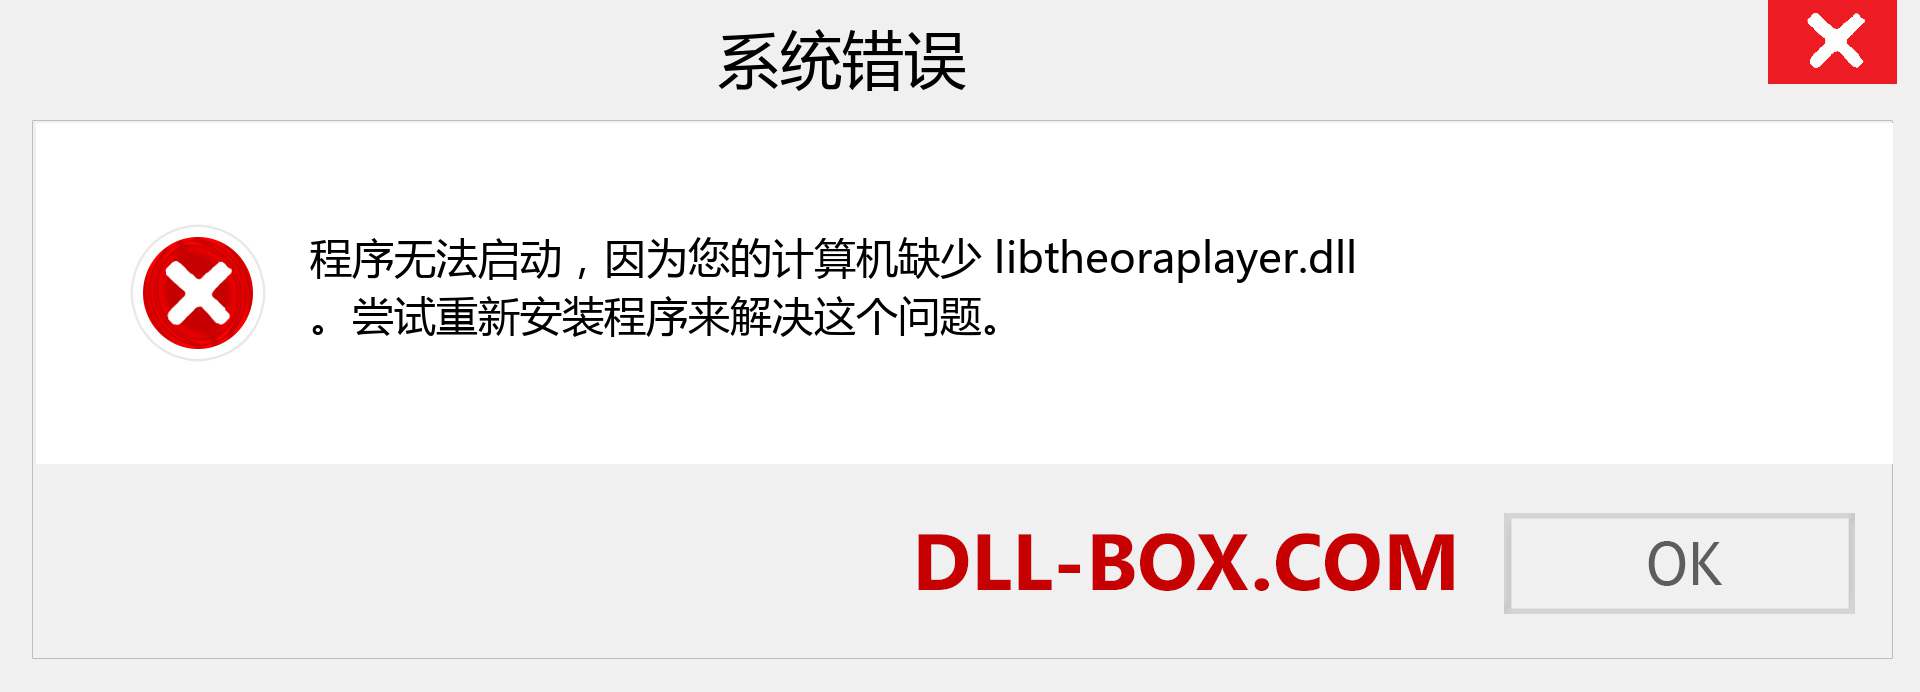 libtheoraplayer.dll 文件丢失？。 适用于 Windows 7、8、10 的下载 - 修复 Windows、照片、图像上的 libtheoraplayer dll 丢失错误